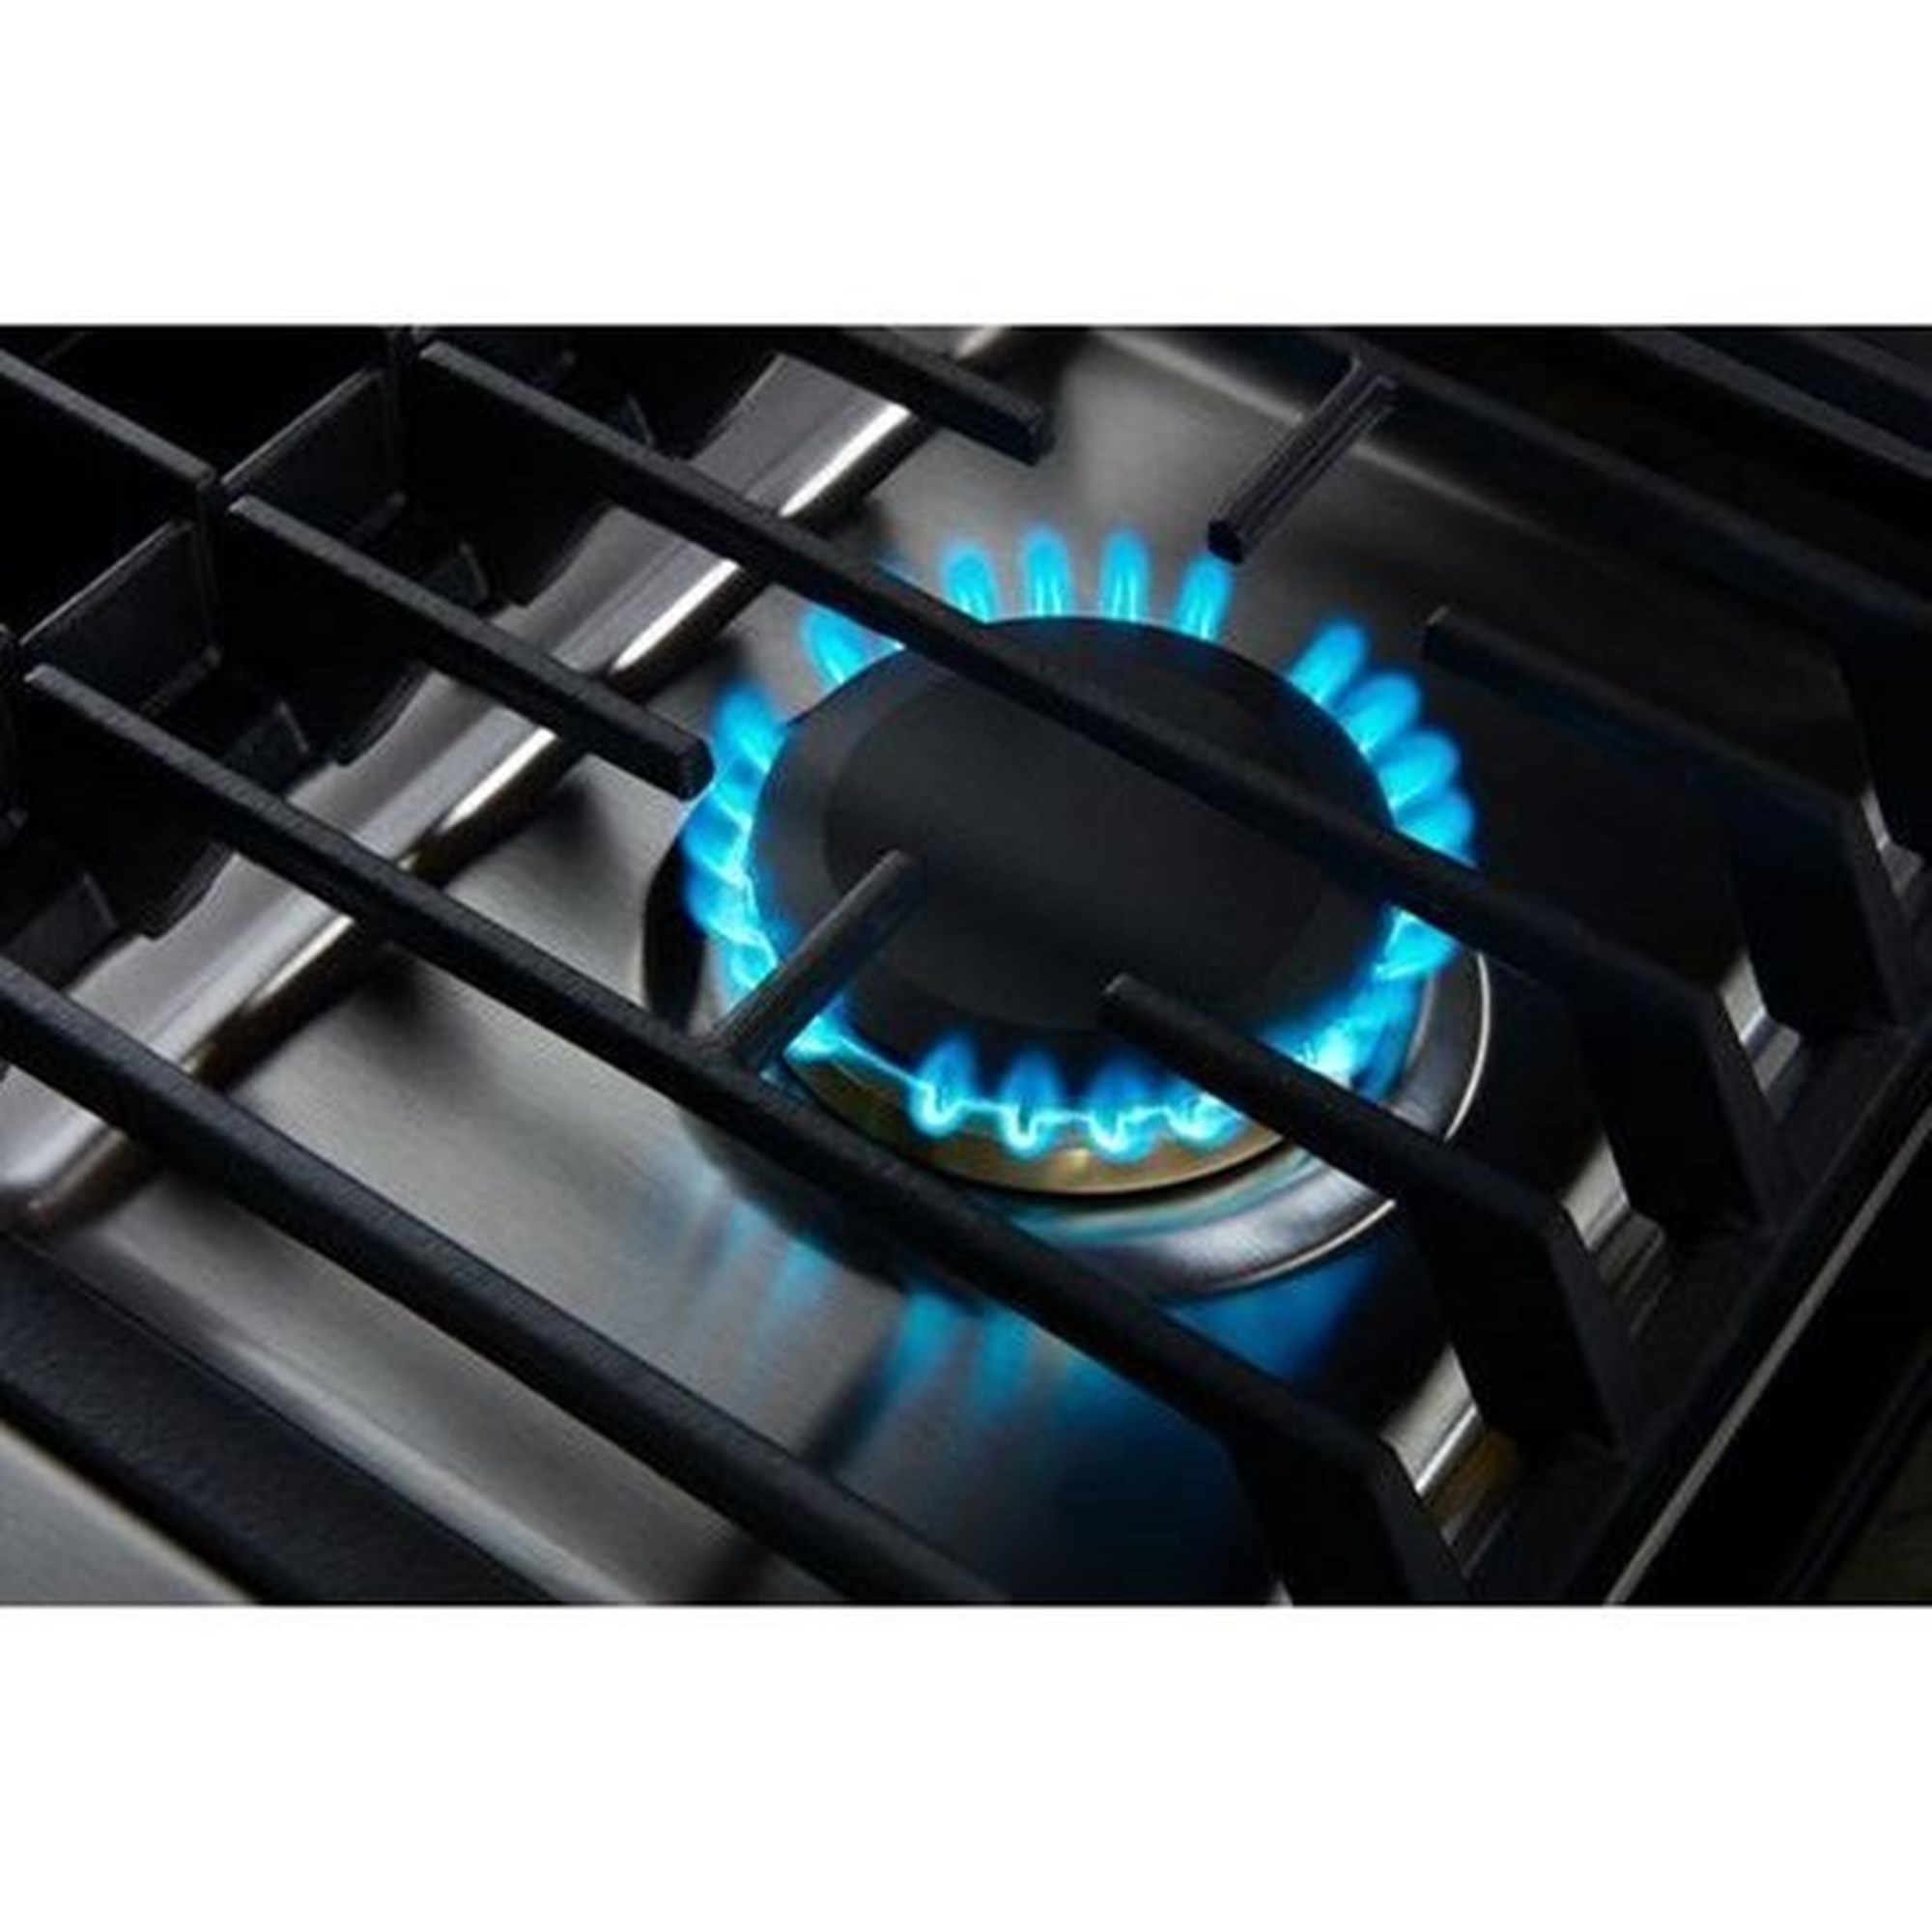 JennAir® 30 Electric Downdraft Cooktop, Garner Appliance & Mattress